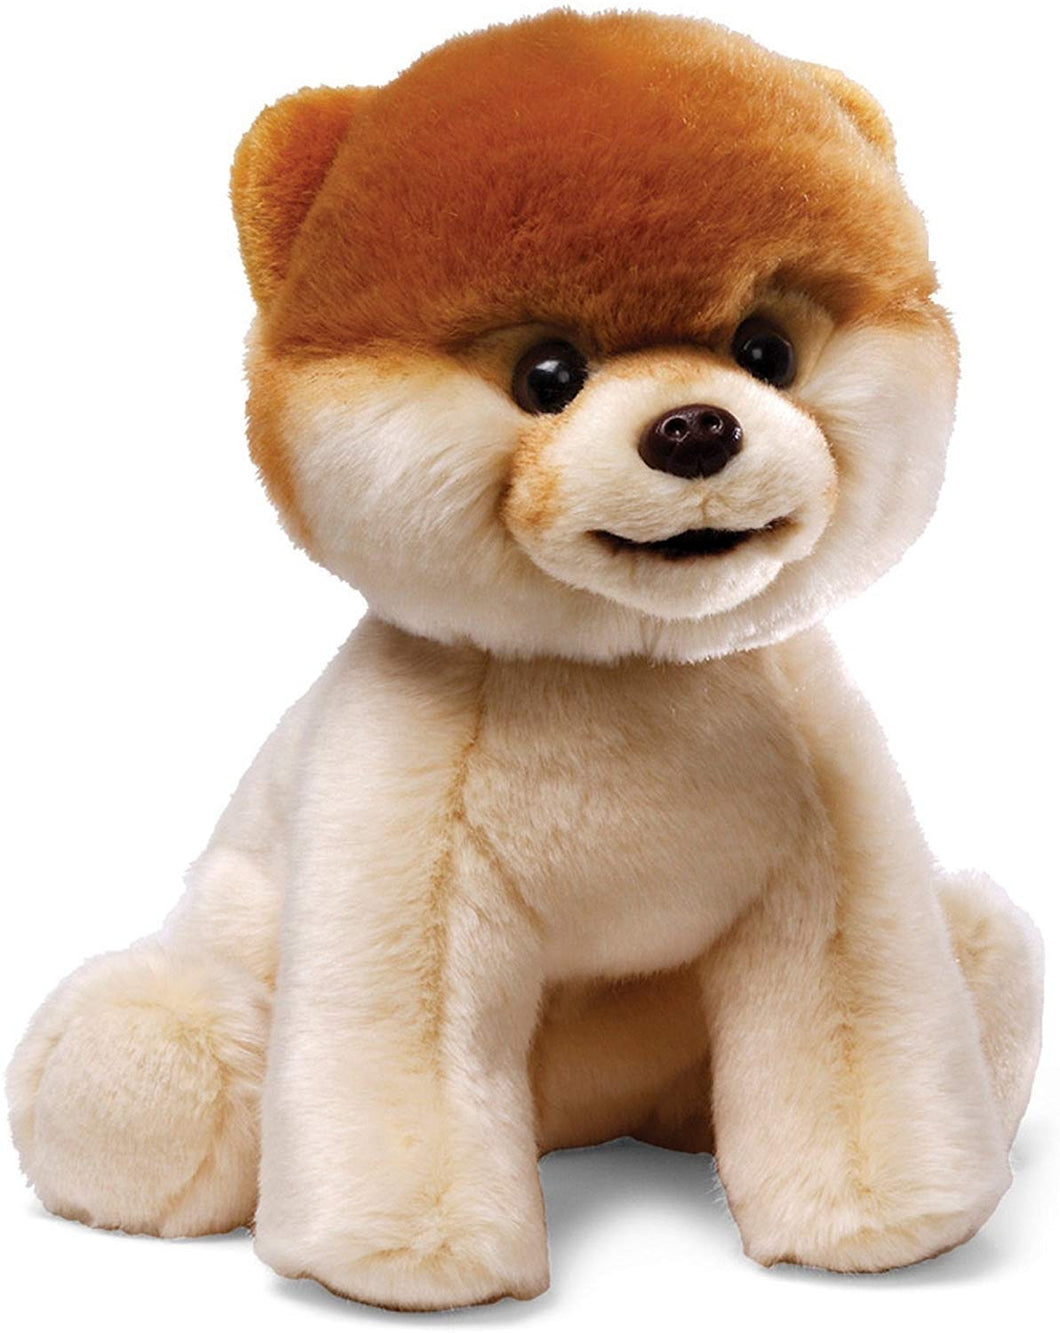 Boo Worlds Cutest Dog Plush- Plush Gund Dog